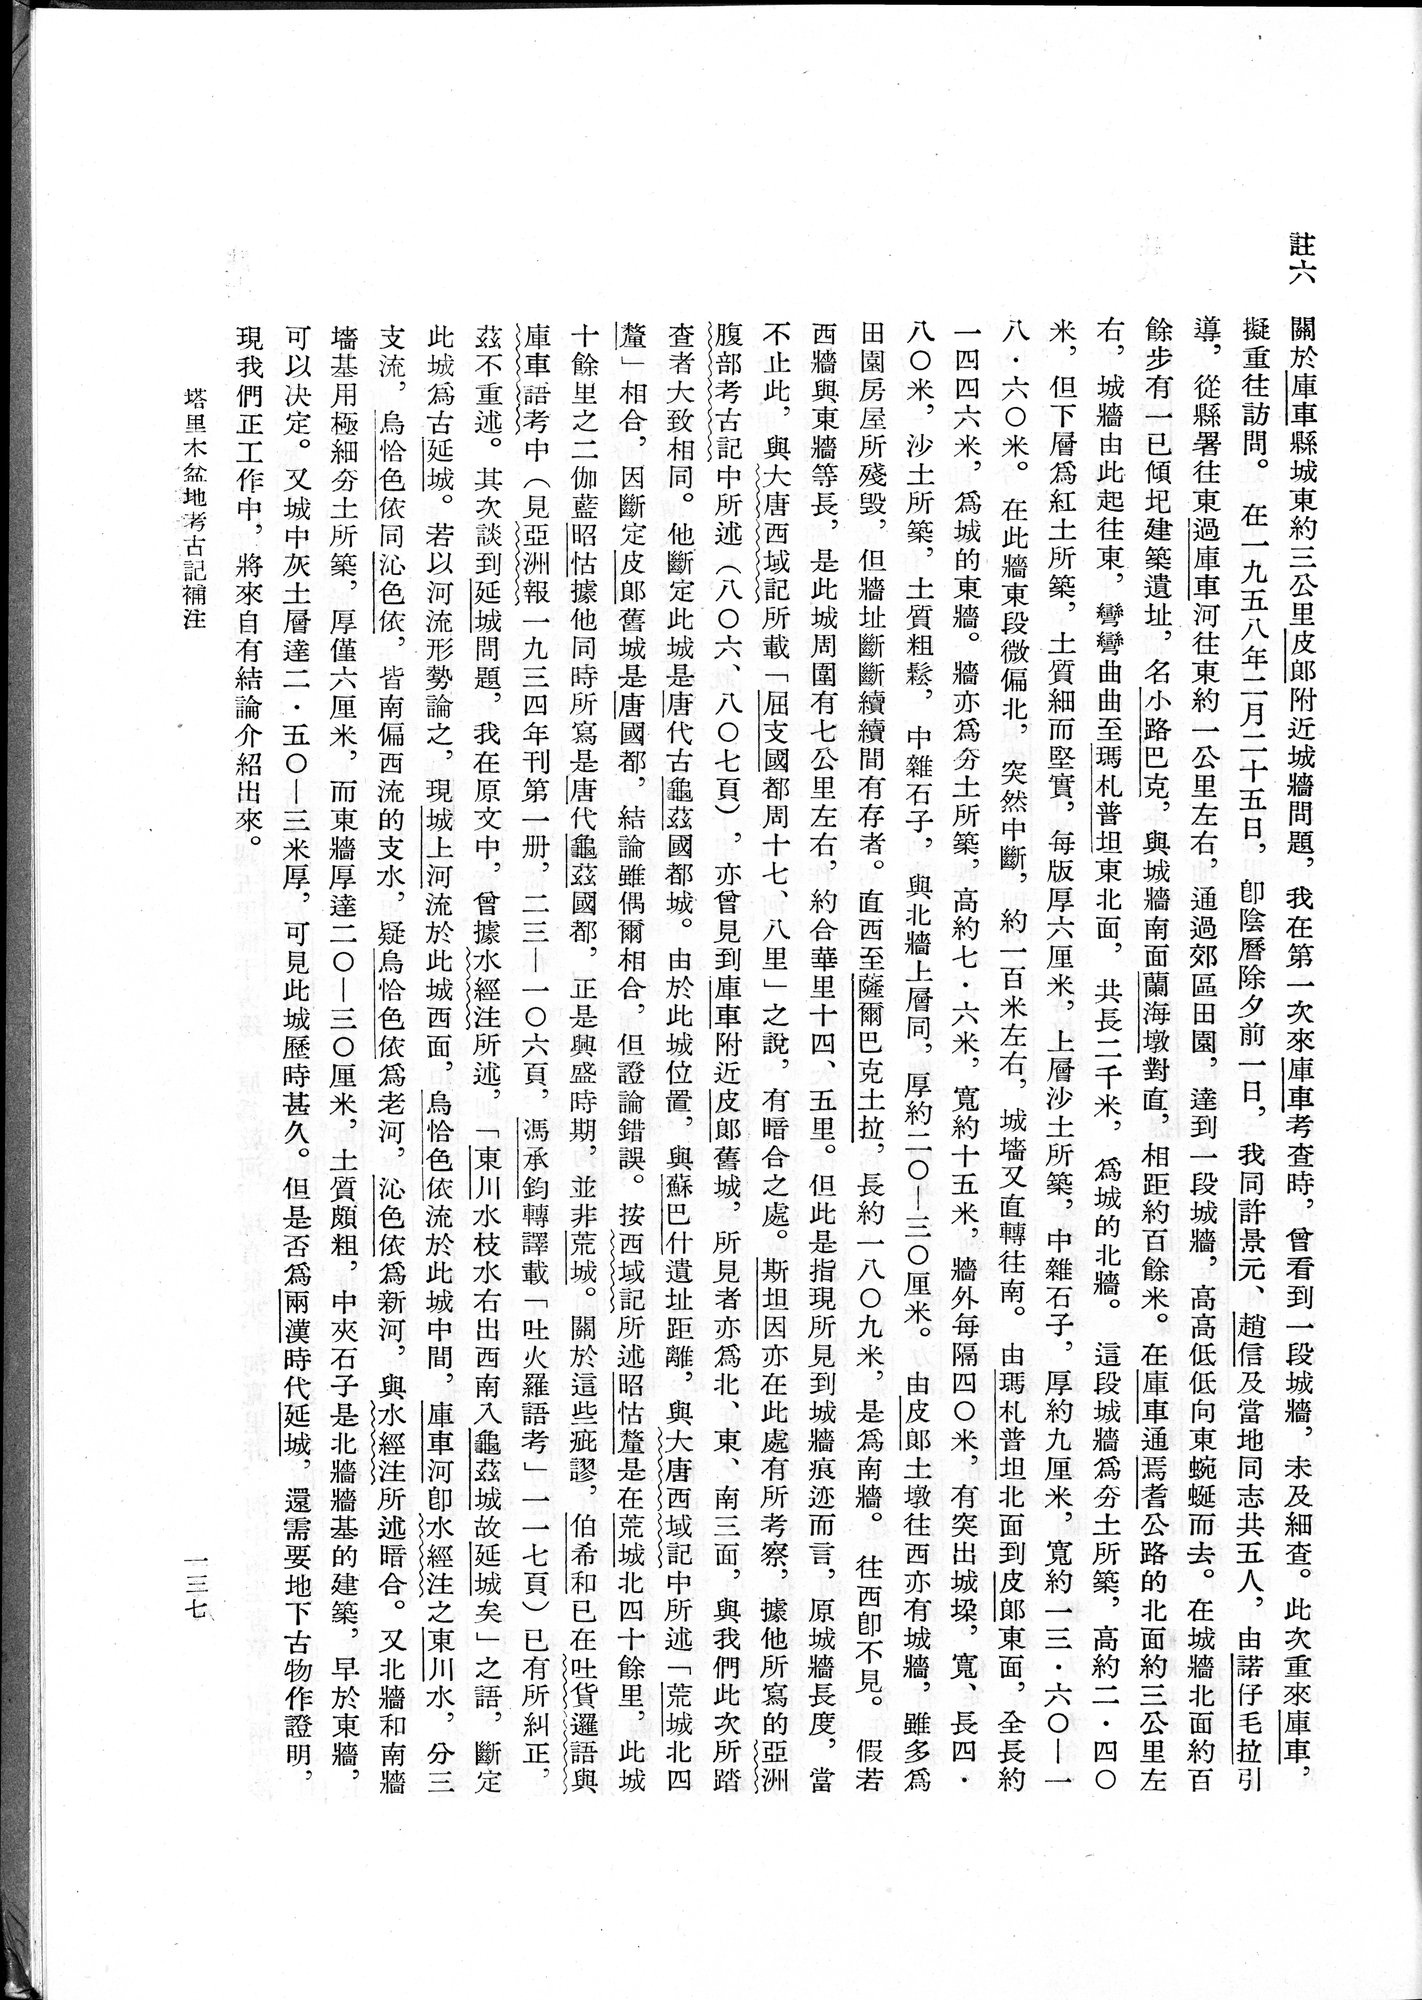 塔里木盆地考古記 : vol.1 / Page 201 (Grayscale High Resolution Image)